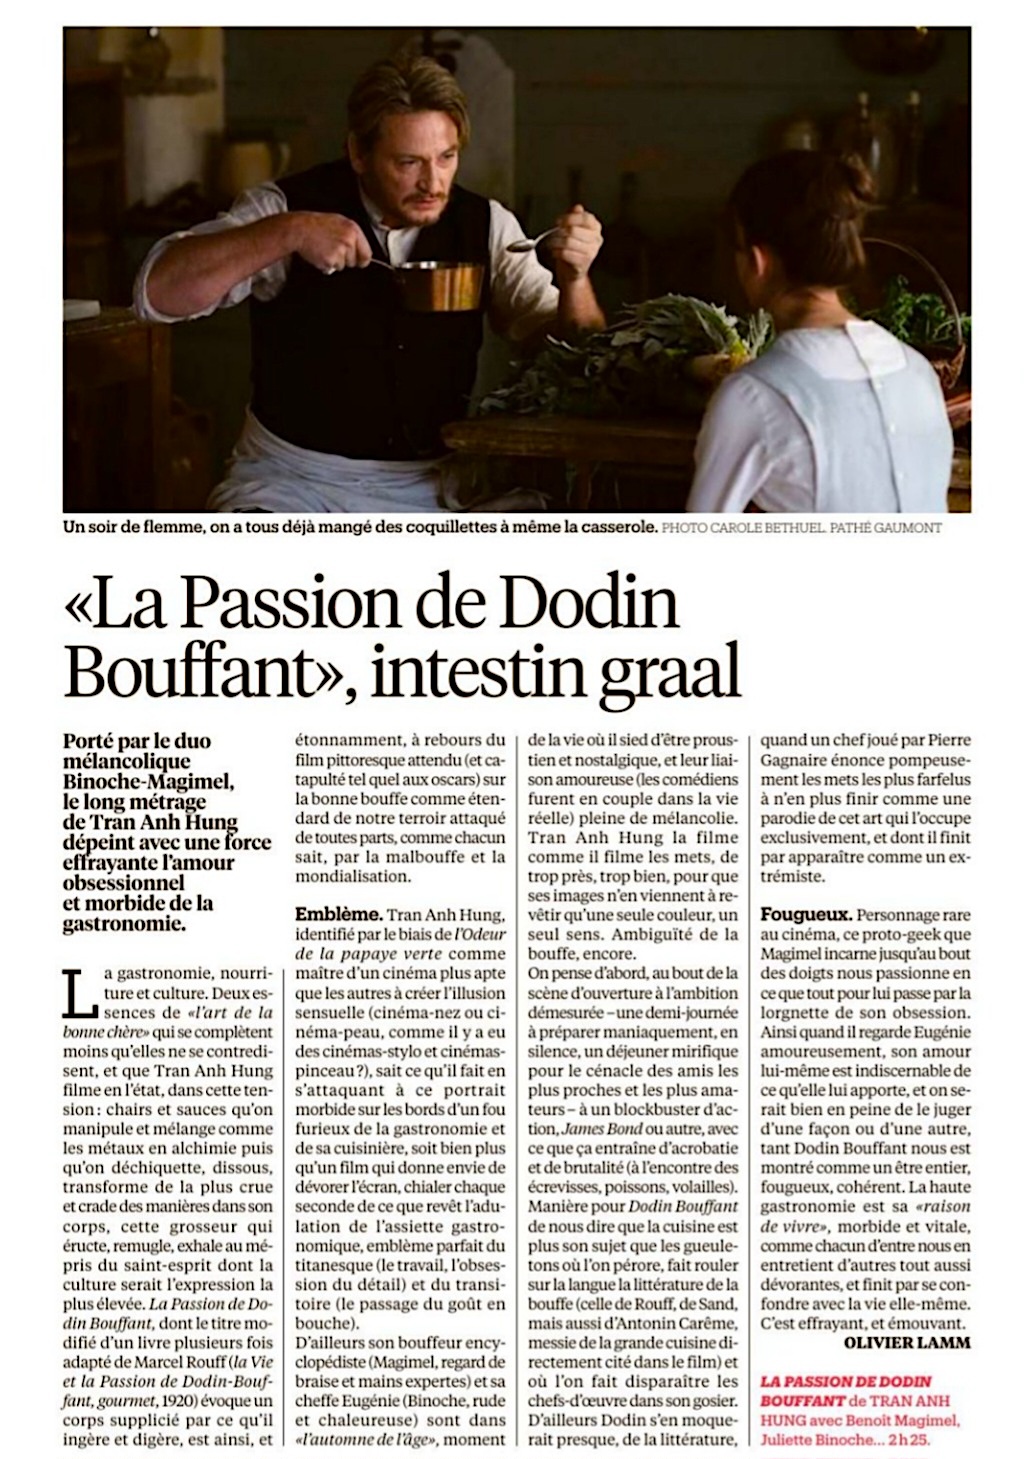 Dodin-Bouffant et Menus-Plaisirs chez les Troisgros : Films passionnément  gastronomiques - Le Cœur des Chefs